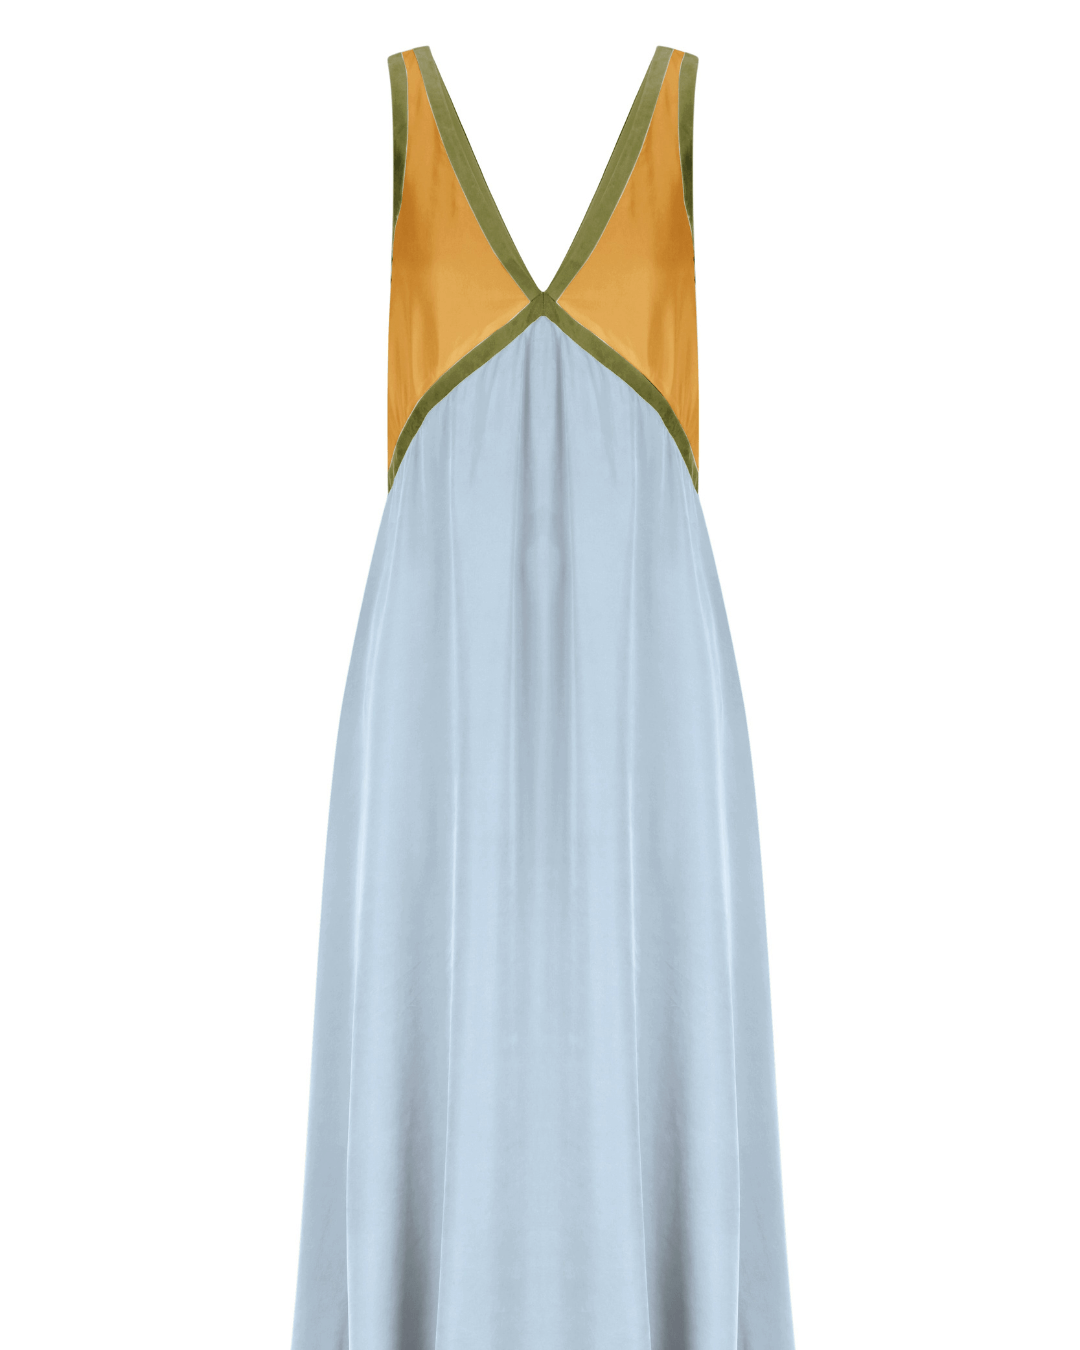 Chic V-neck contrasting color dress